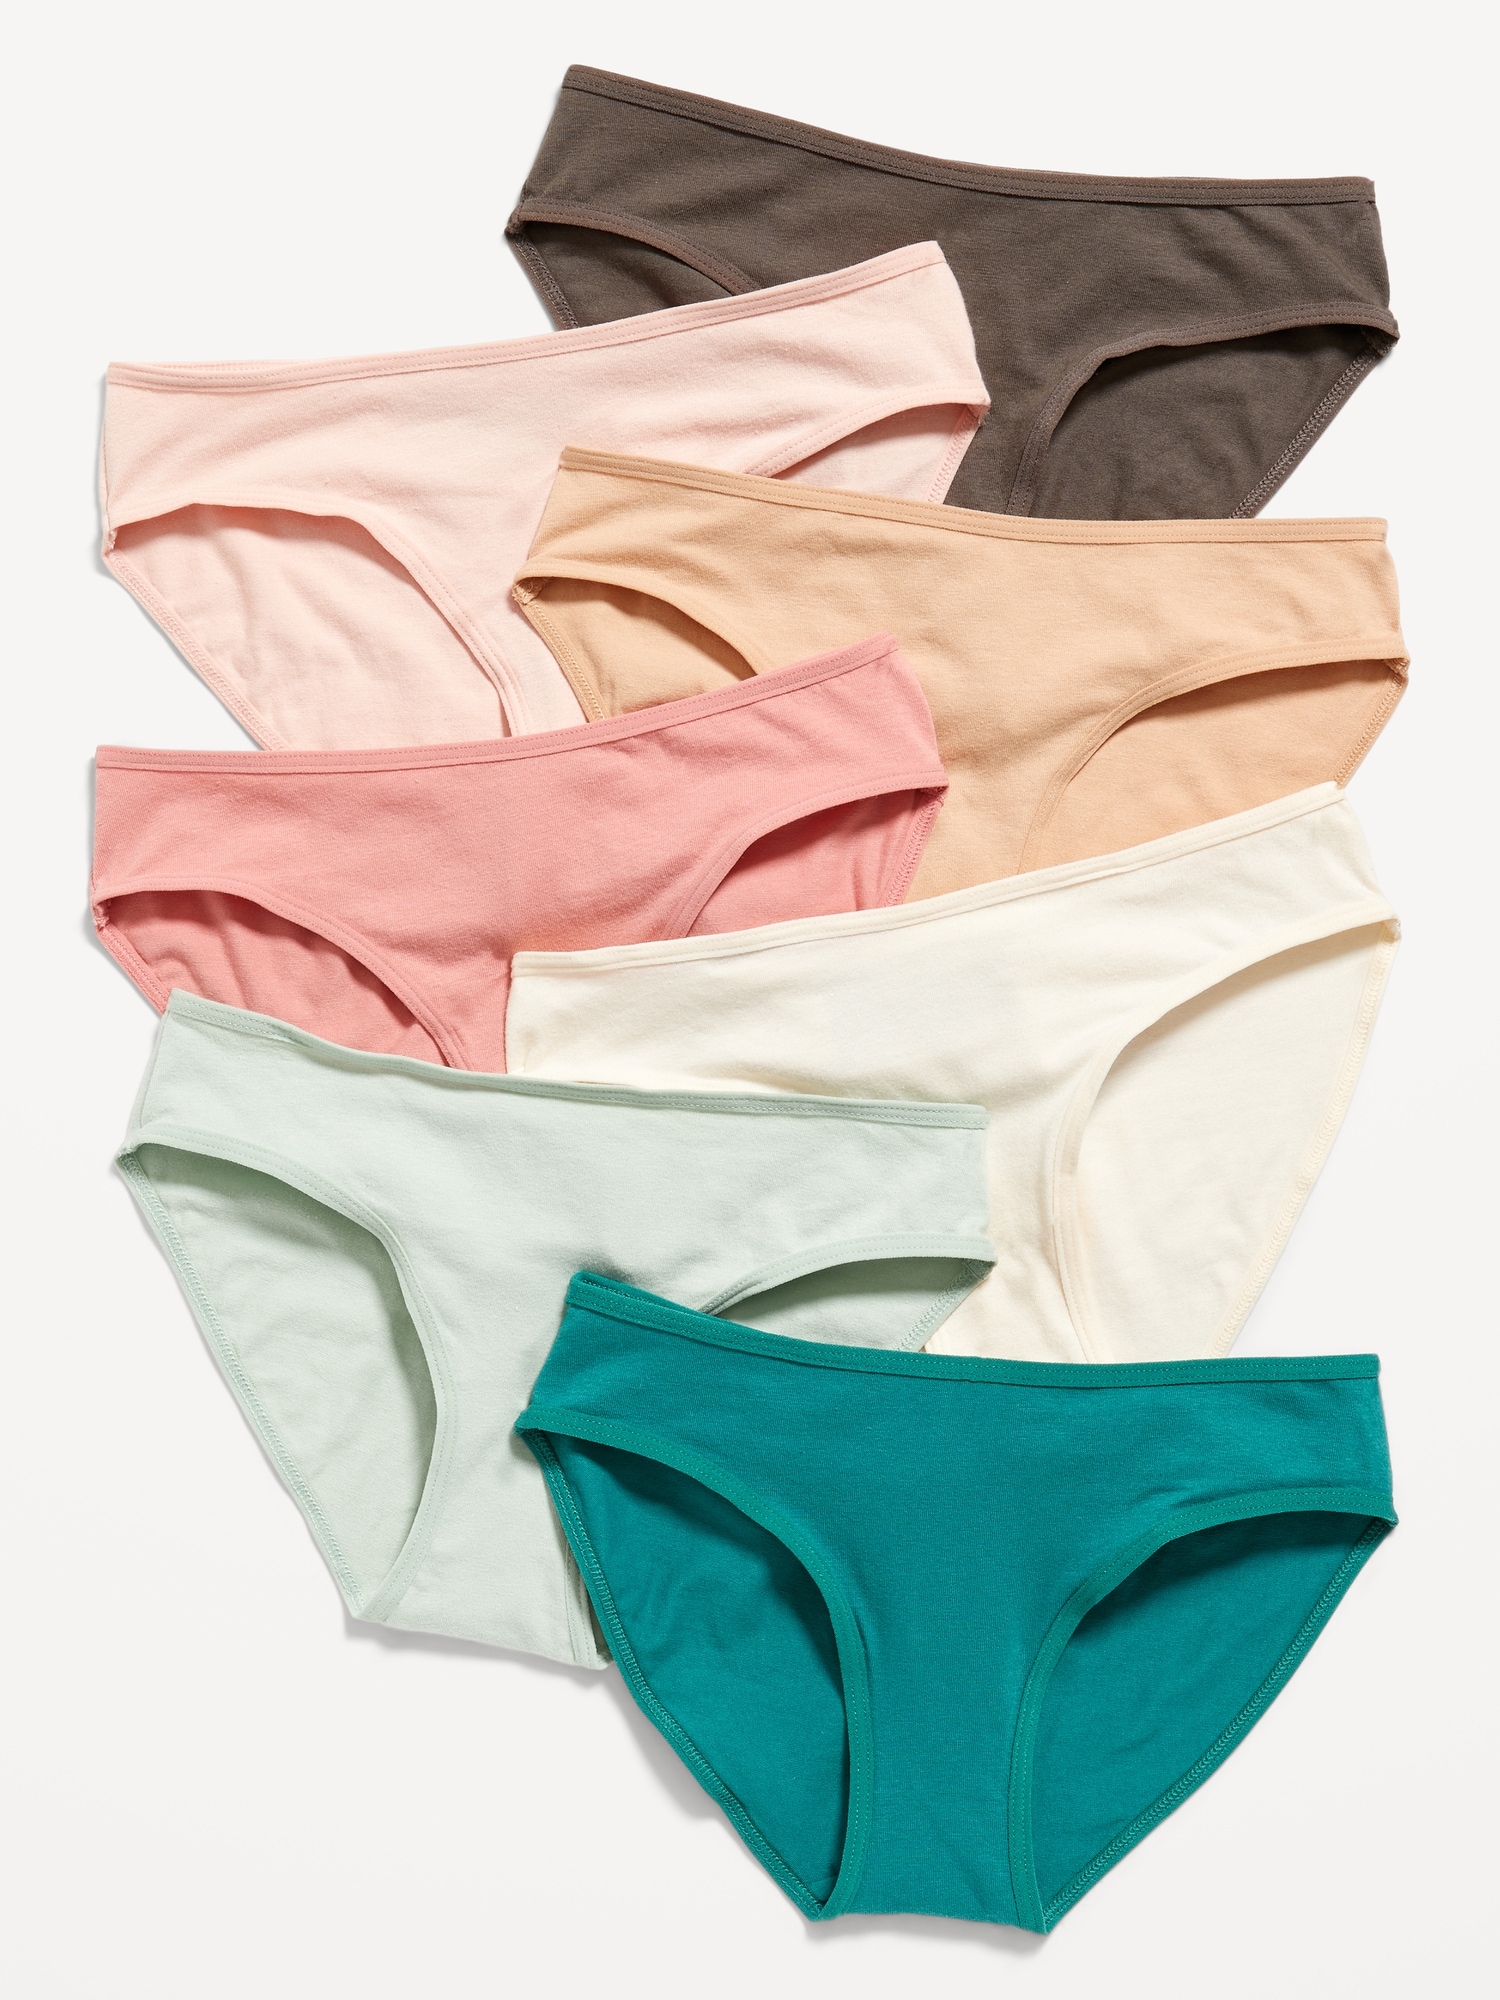 Nano Girls Three-pack Underwear Set in Pink/Grey/Navy